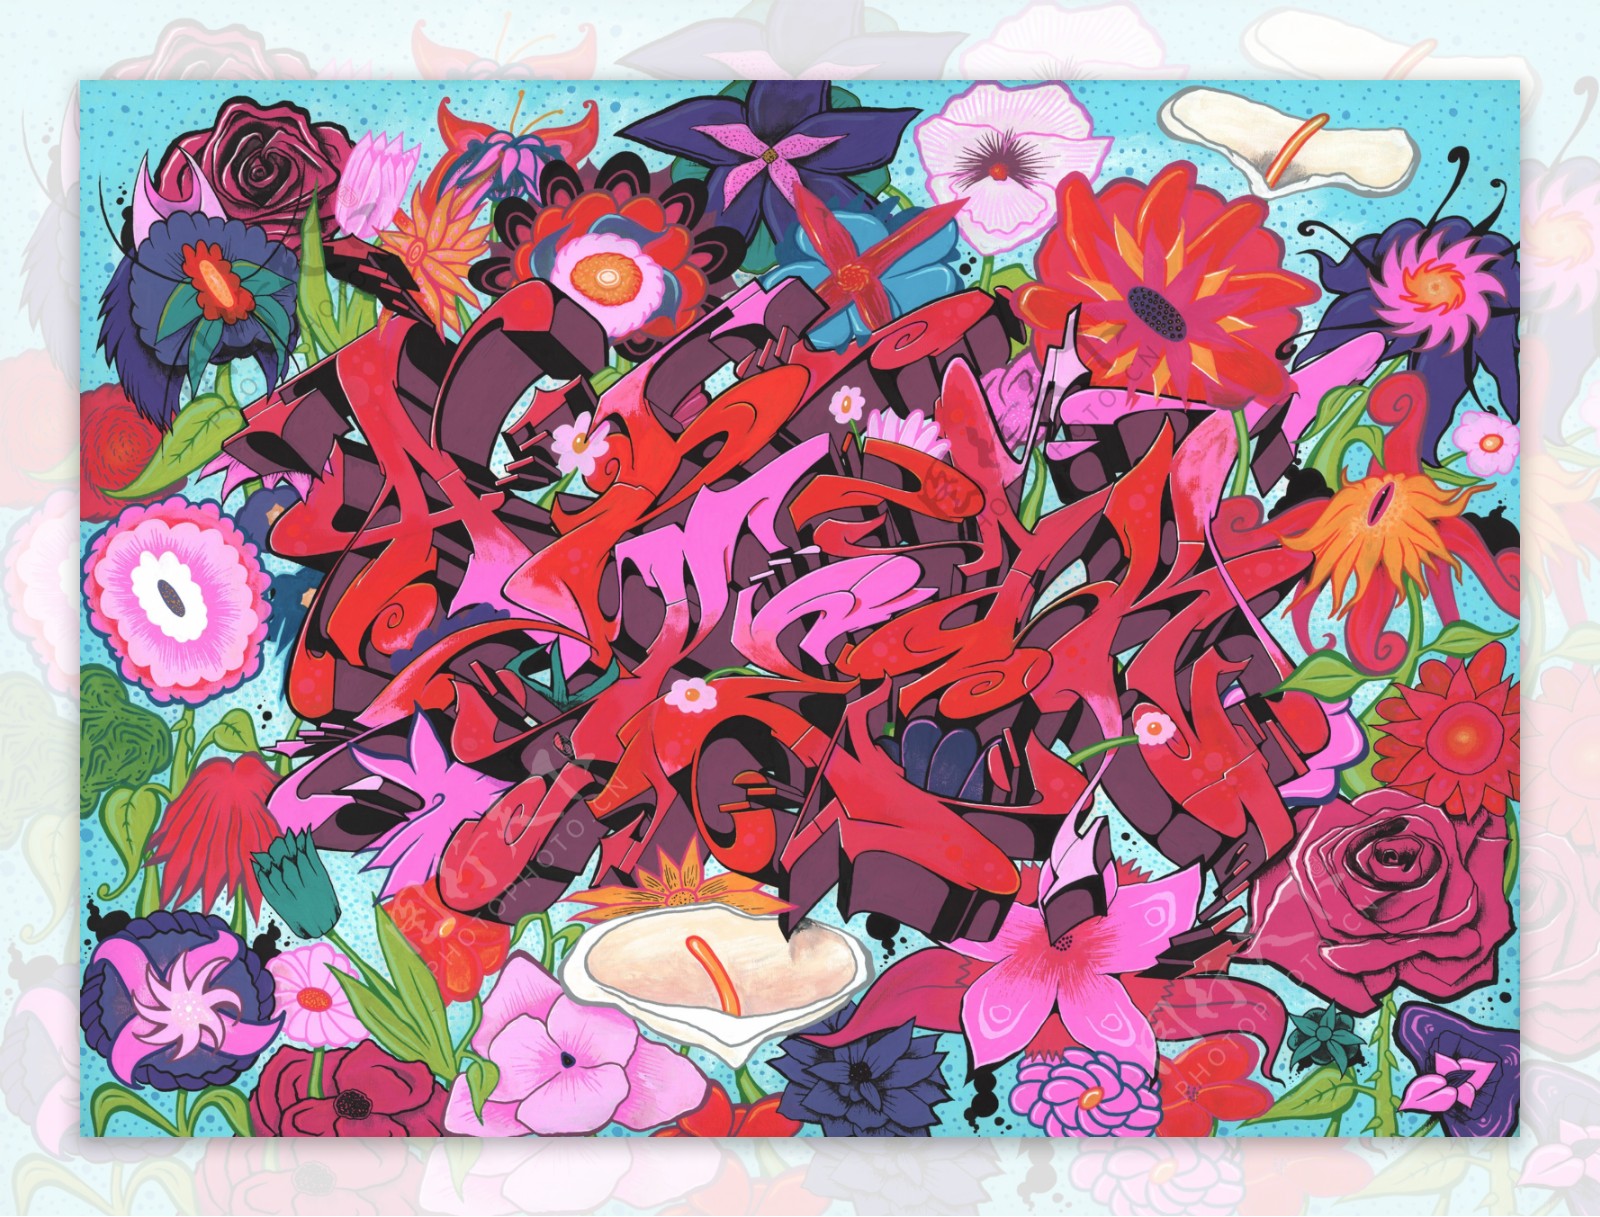 彩色手绘红色花朵植物壁纸图案